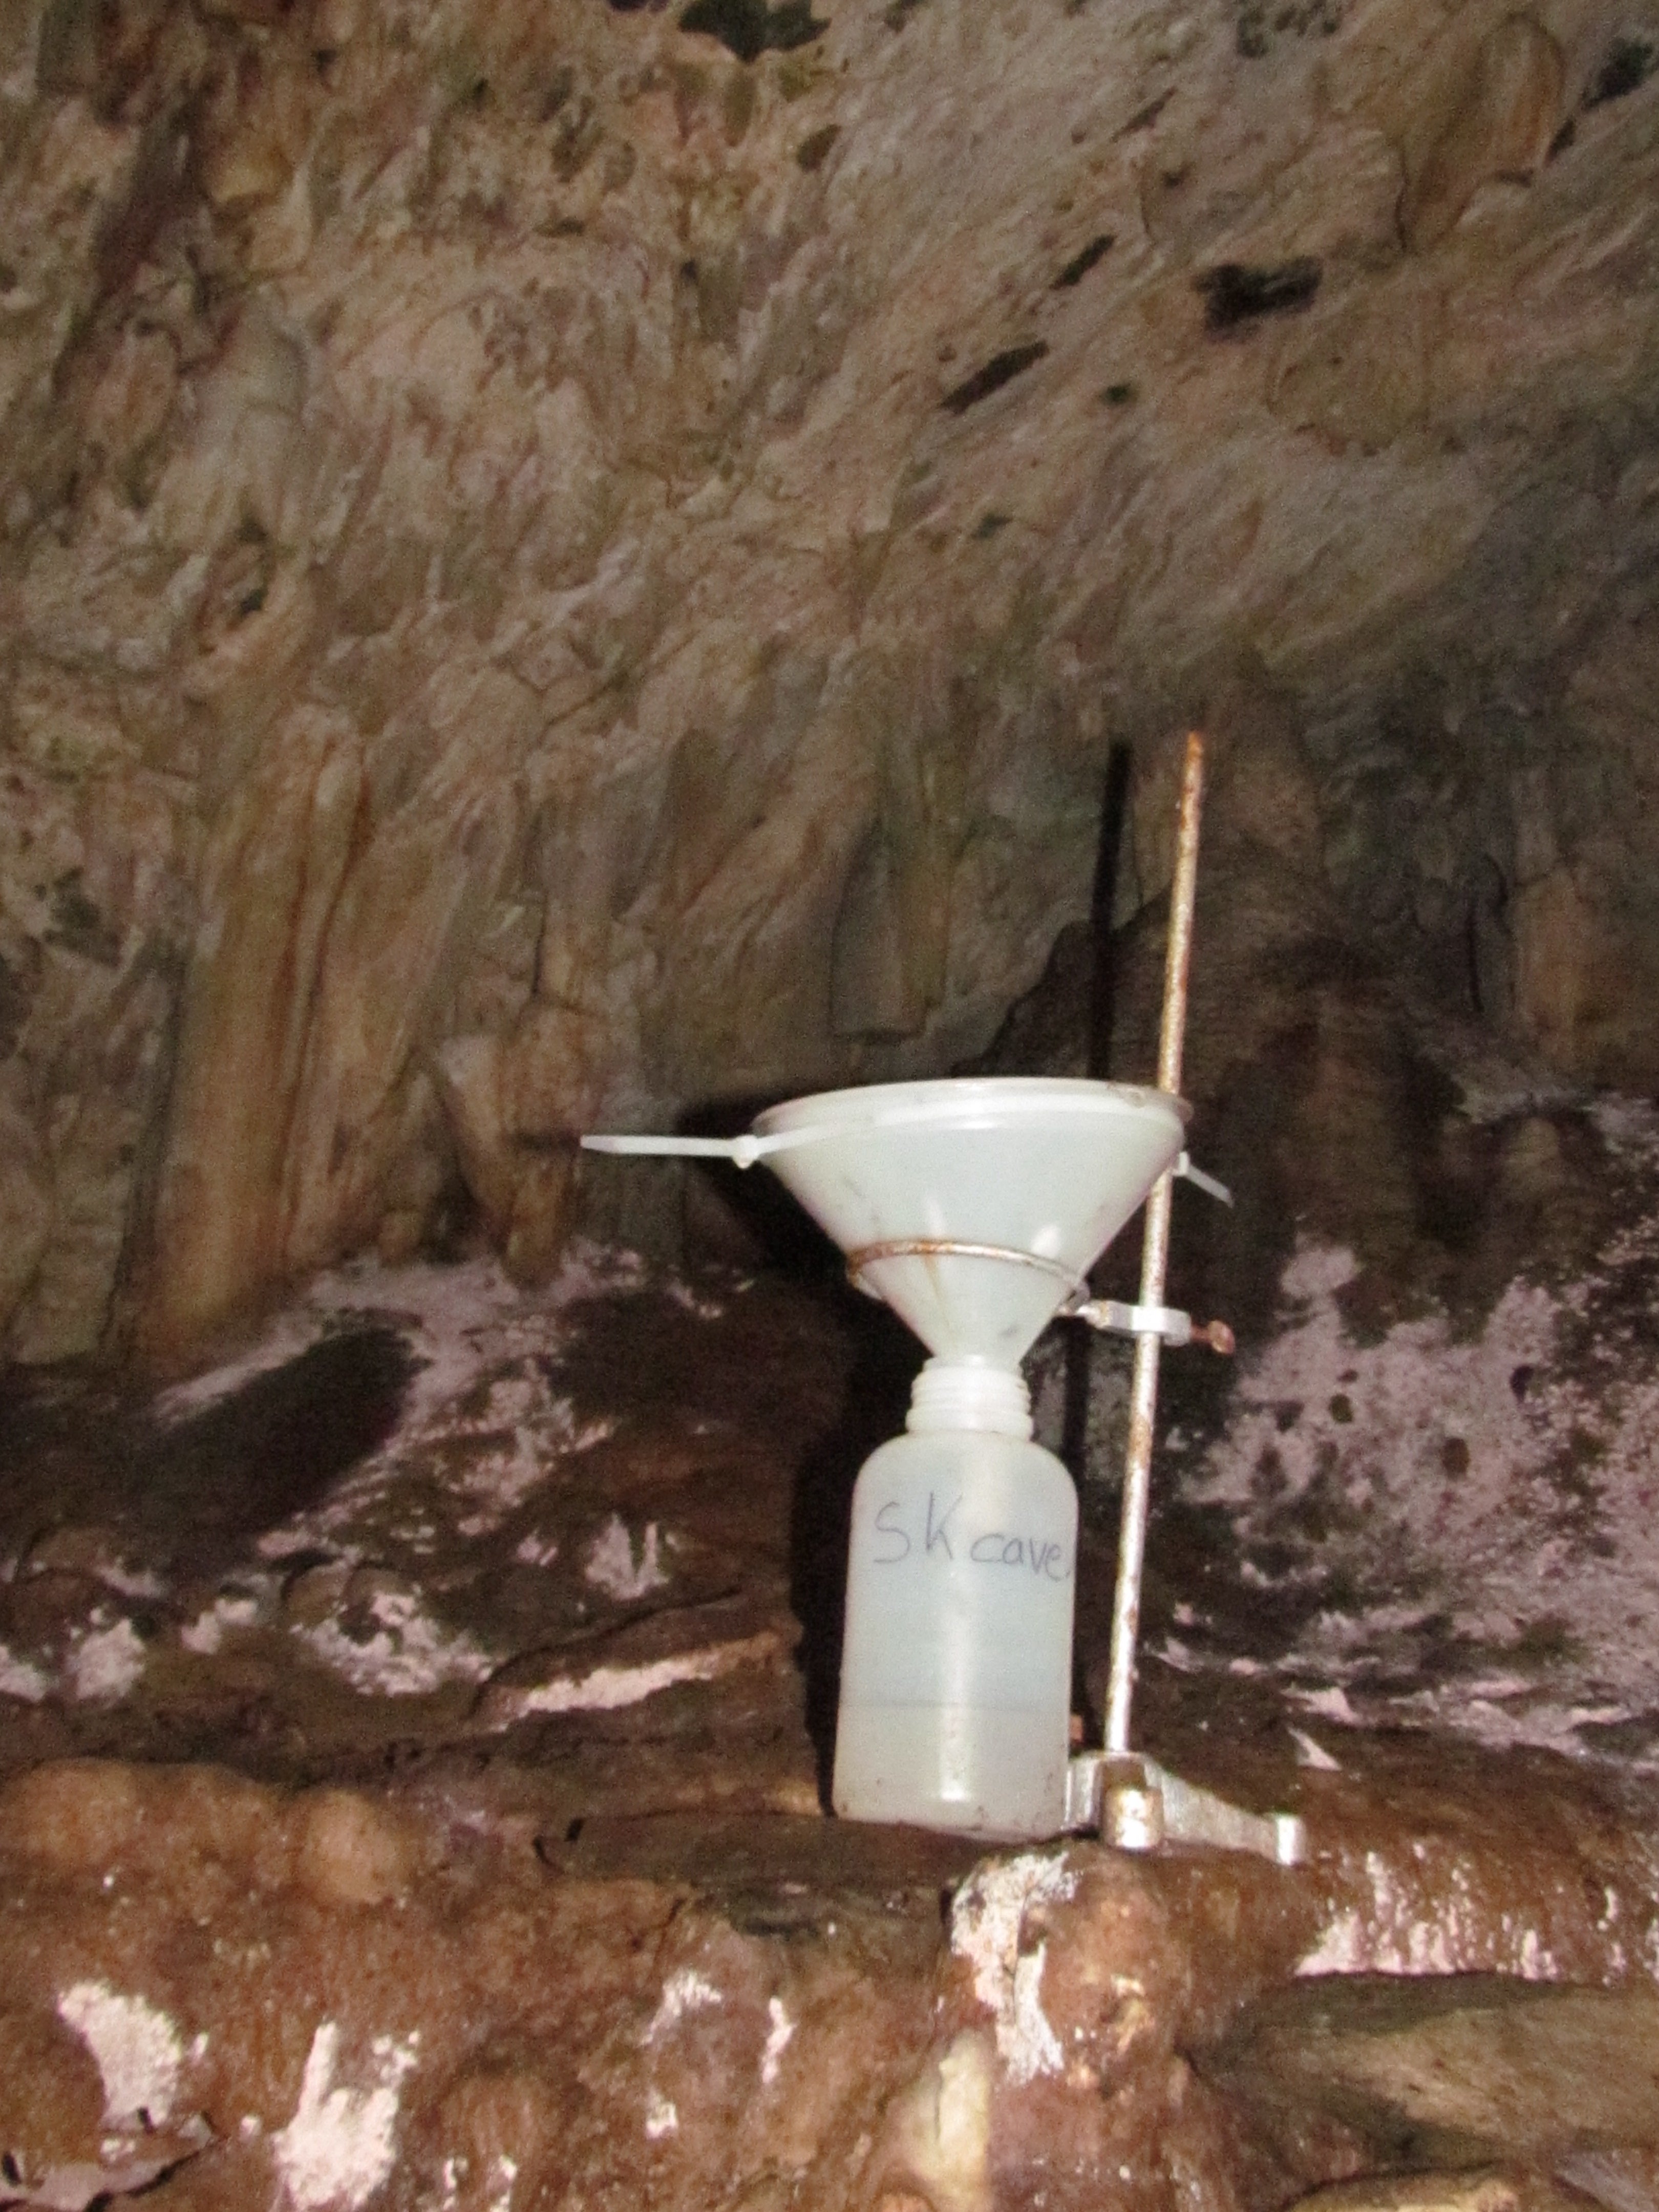 water sampling equipment, dripwater, cave water, water sampling,